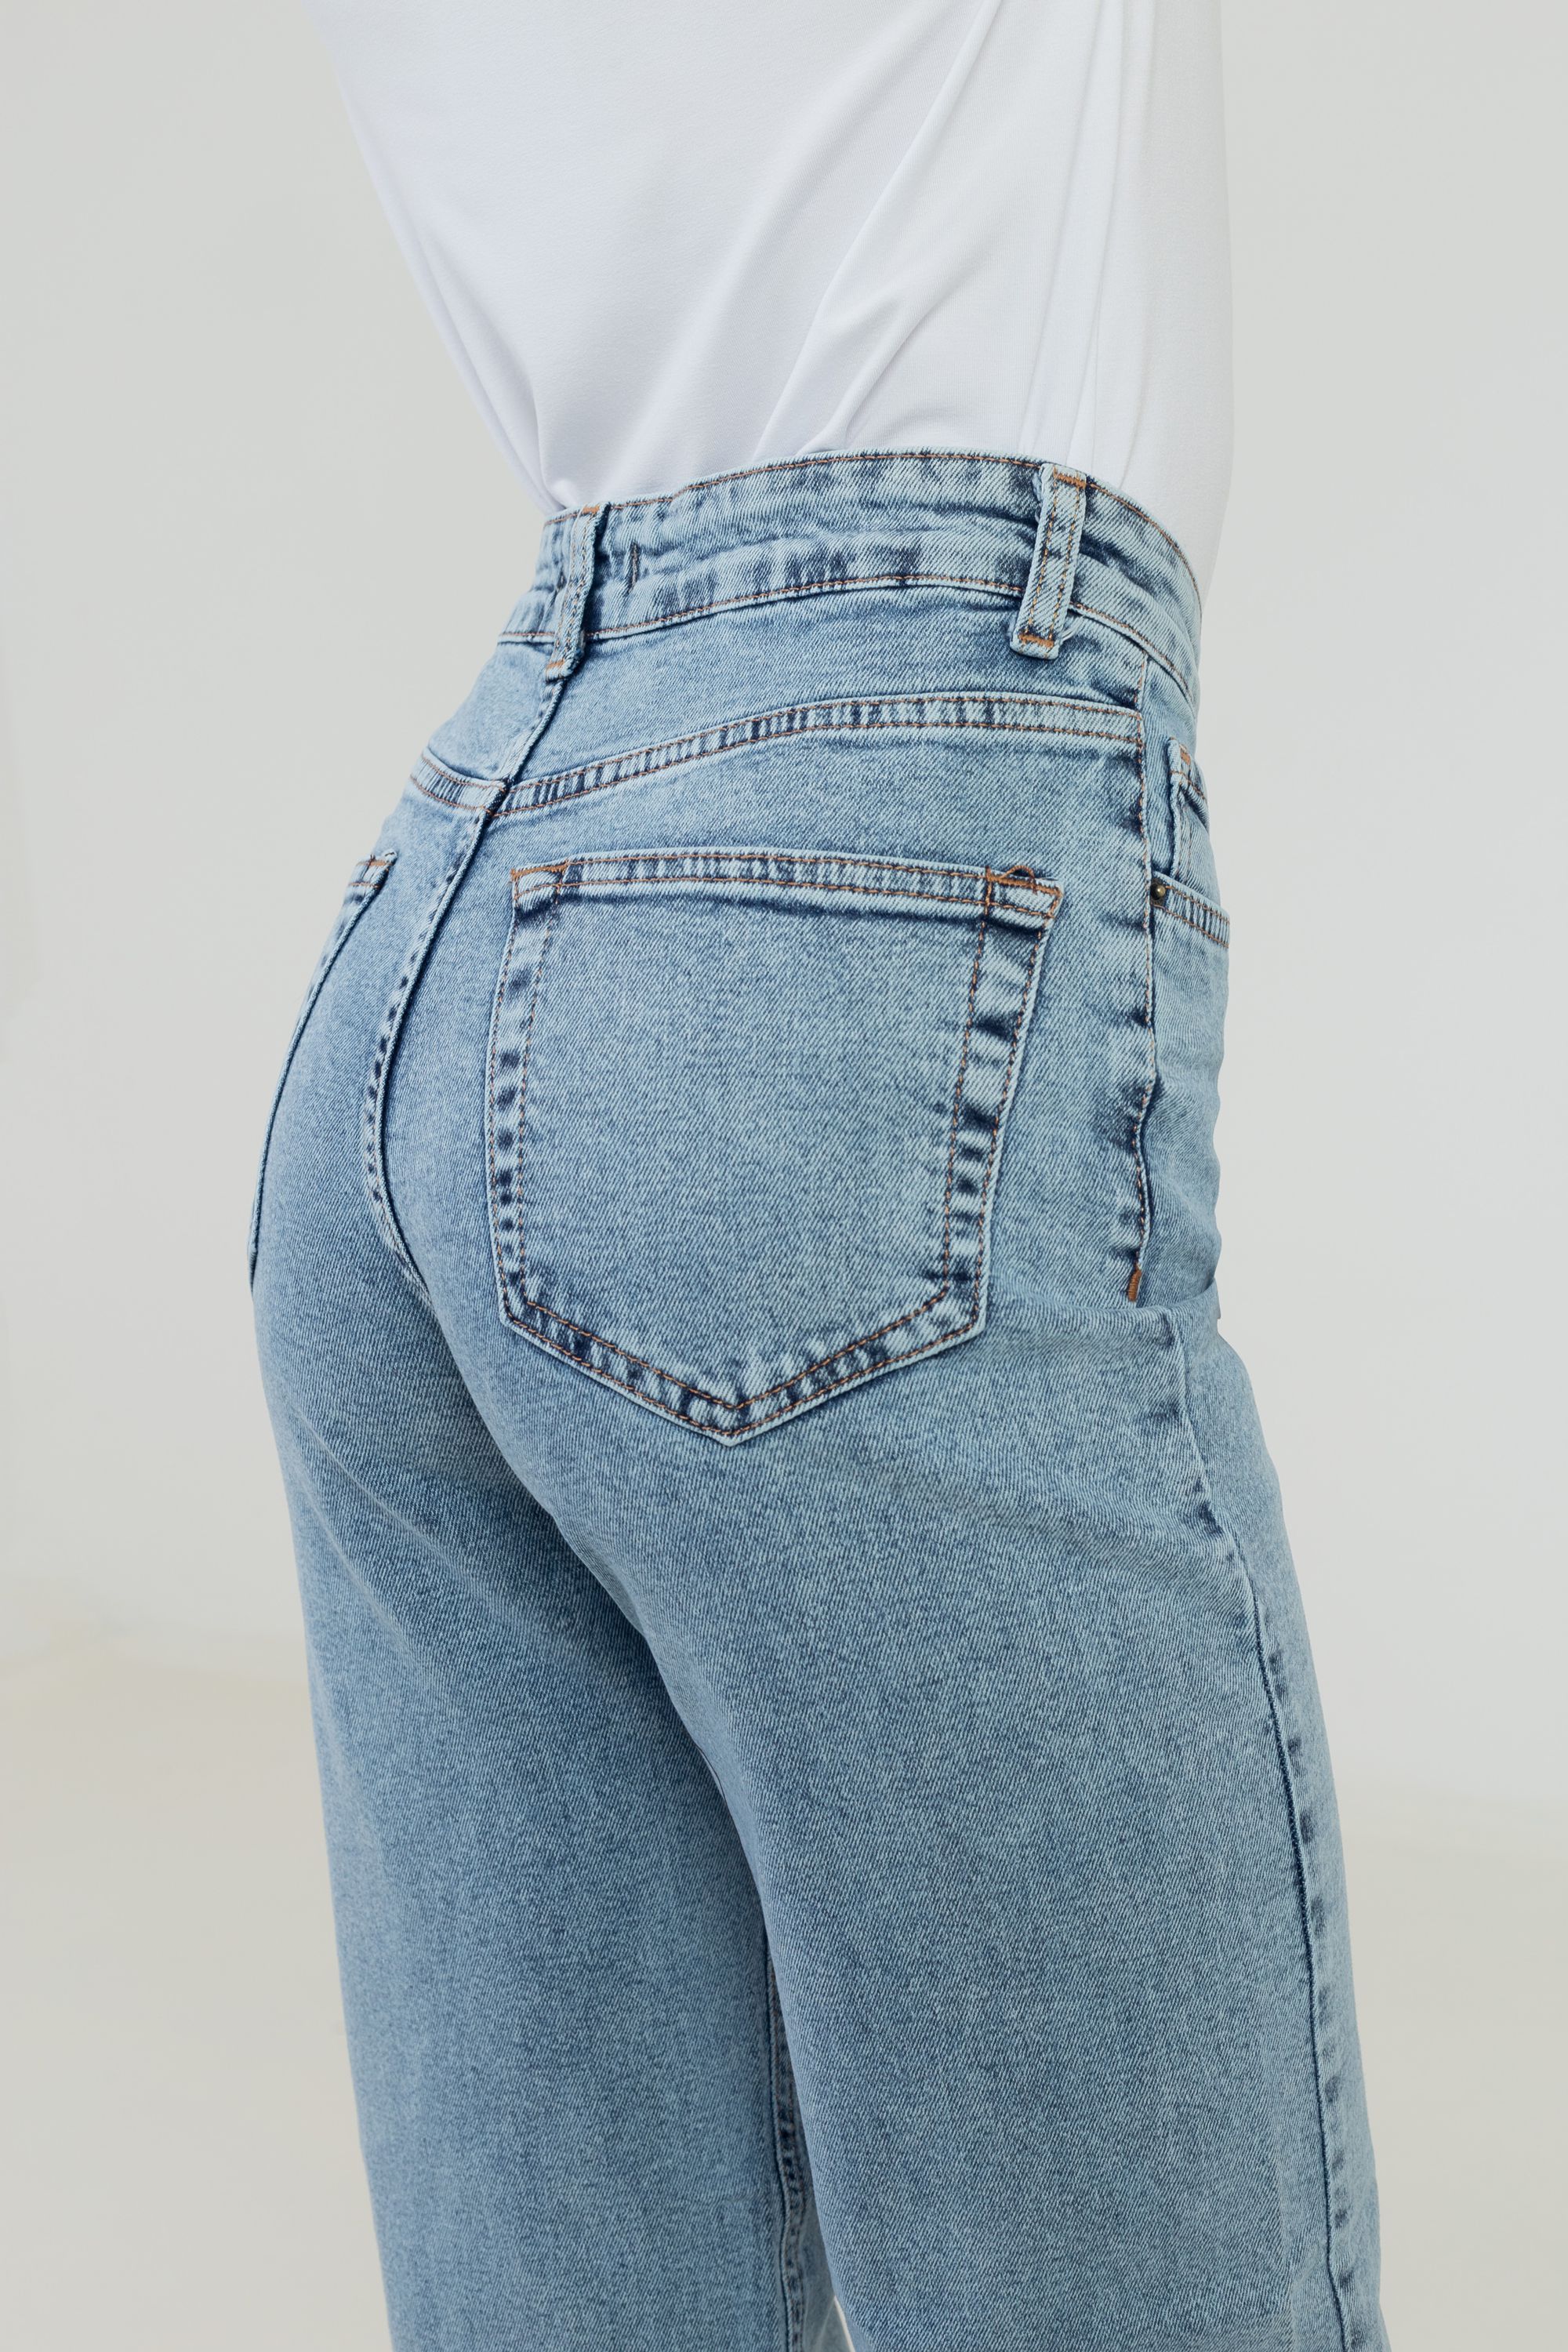 Брюки джинсовые женские "REAL BLUE" 3520 3520